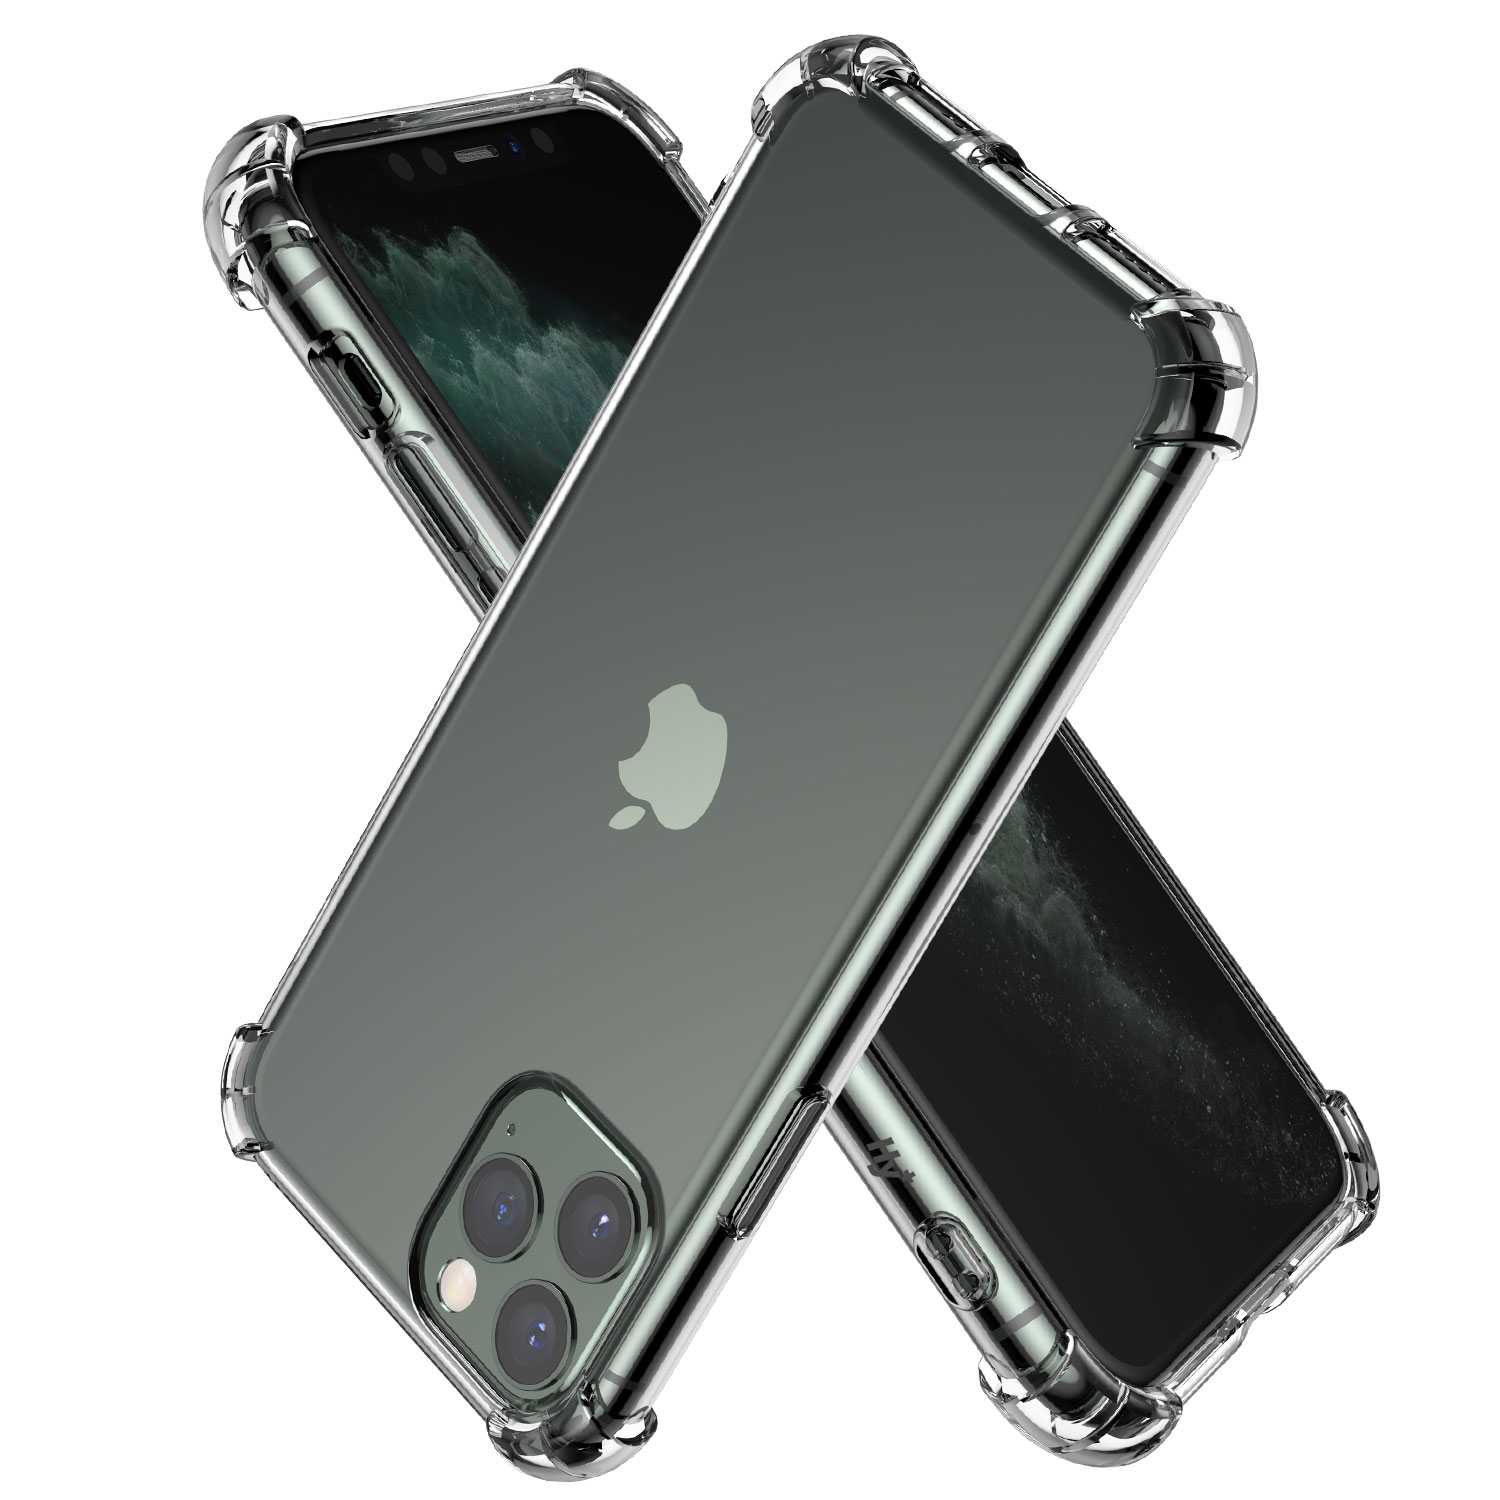 米軍MIL規格準拠！iPhone 11、11 Pro、11 Pro Max 用 耐衝撃TPUクリアケースを9月20日に発売 | 株式会社ハイプラス